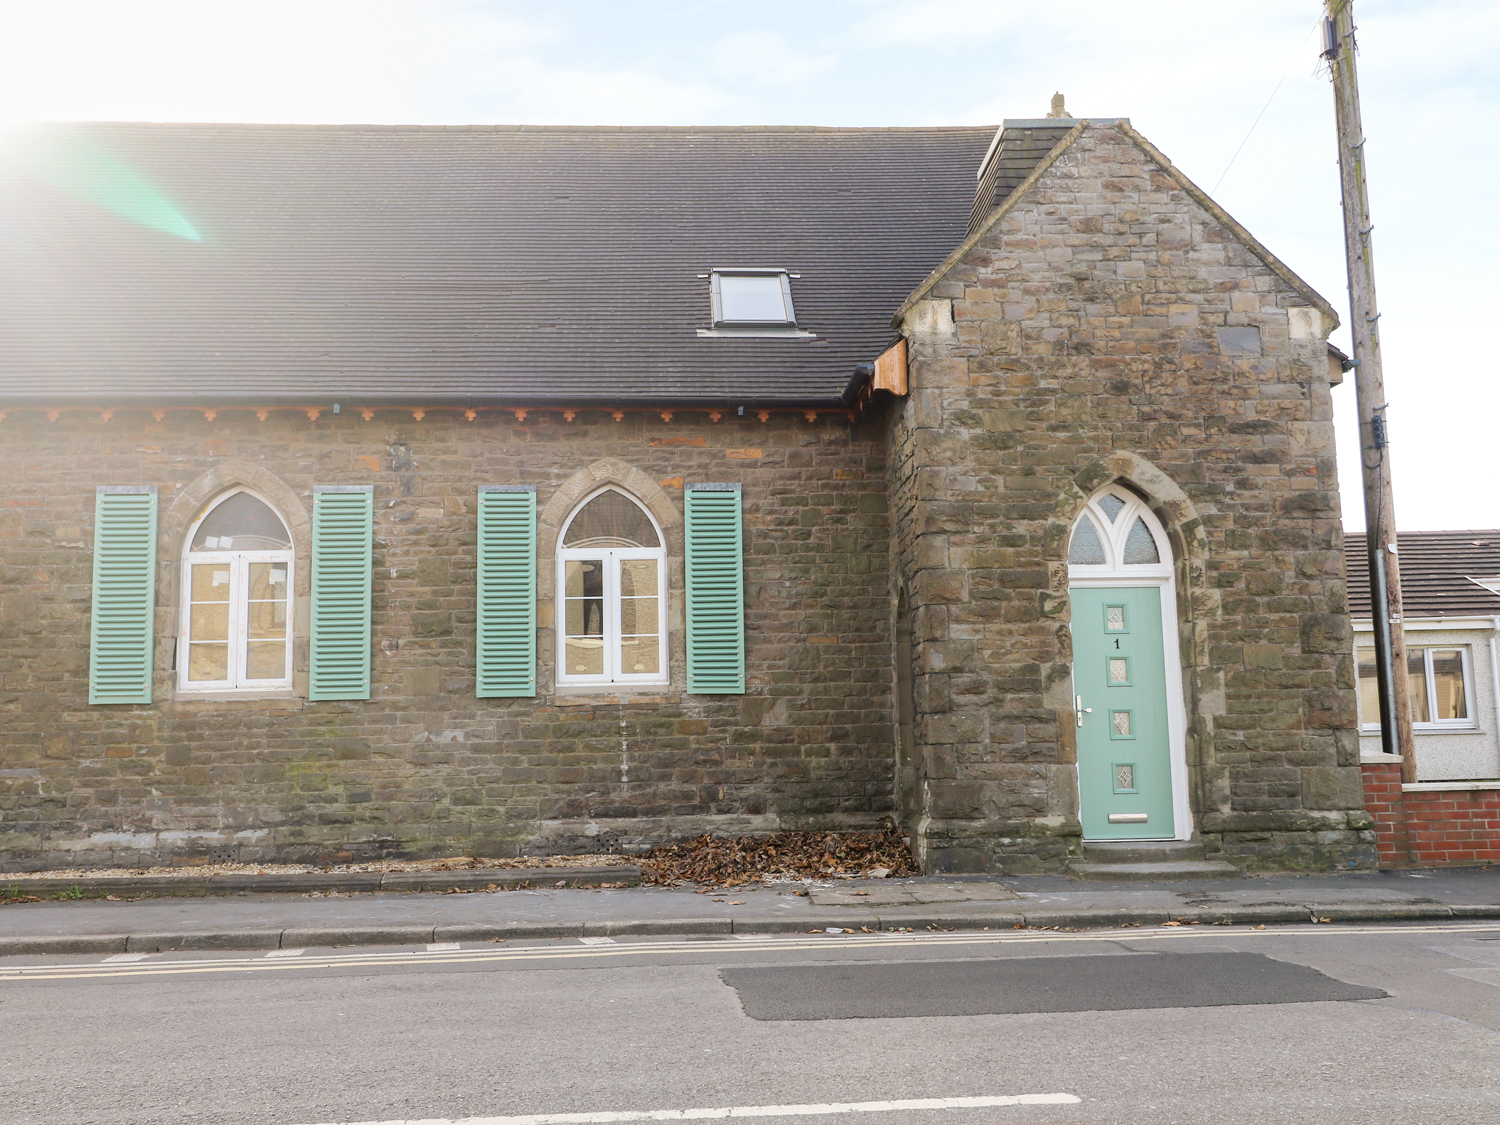 No 1 Church Cottages, Llanelli